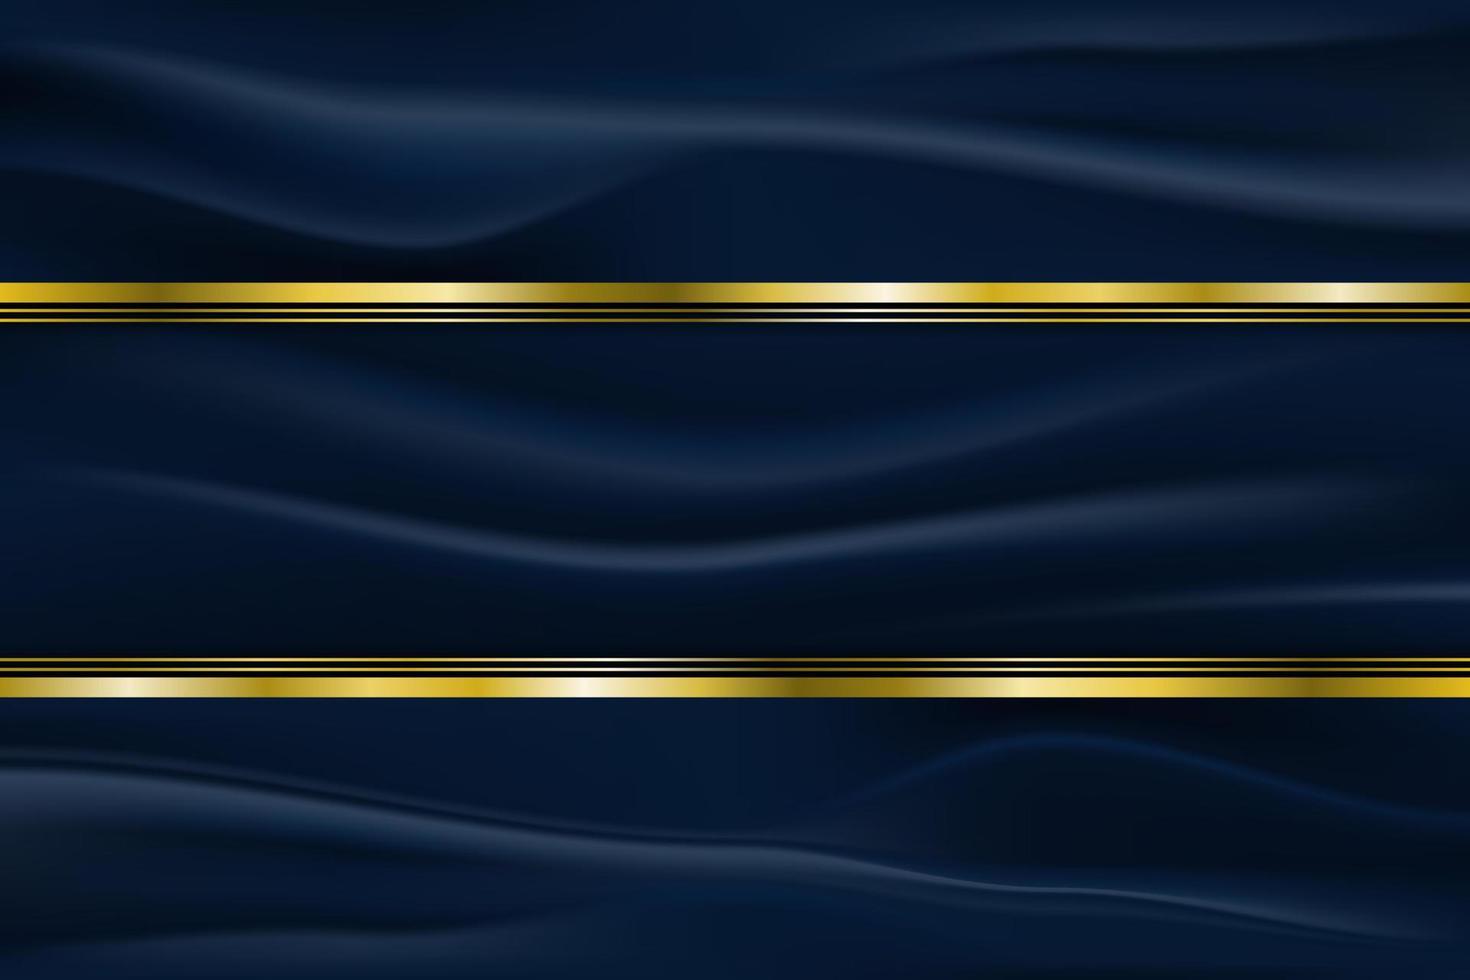 bordure dorée de luxe sur tissu froissé avec fond rayé bleu foncé. illustration vectorielle vecteur